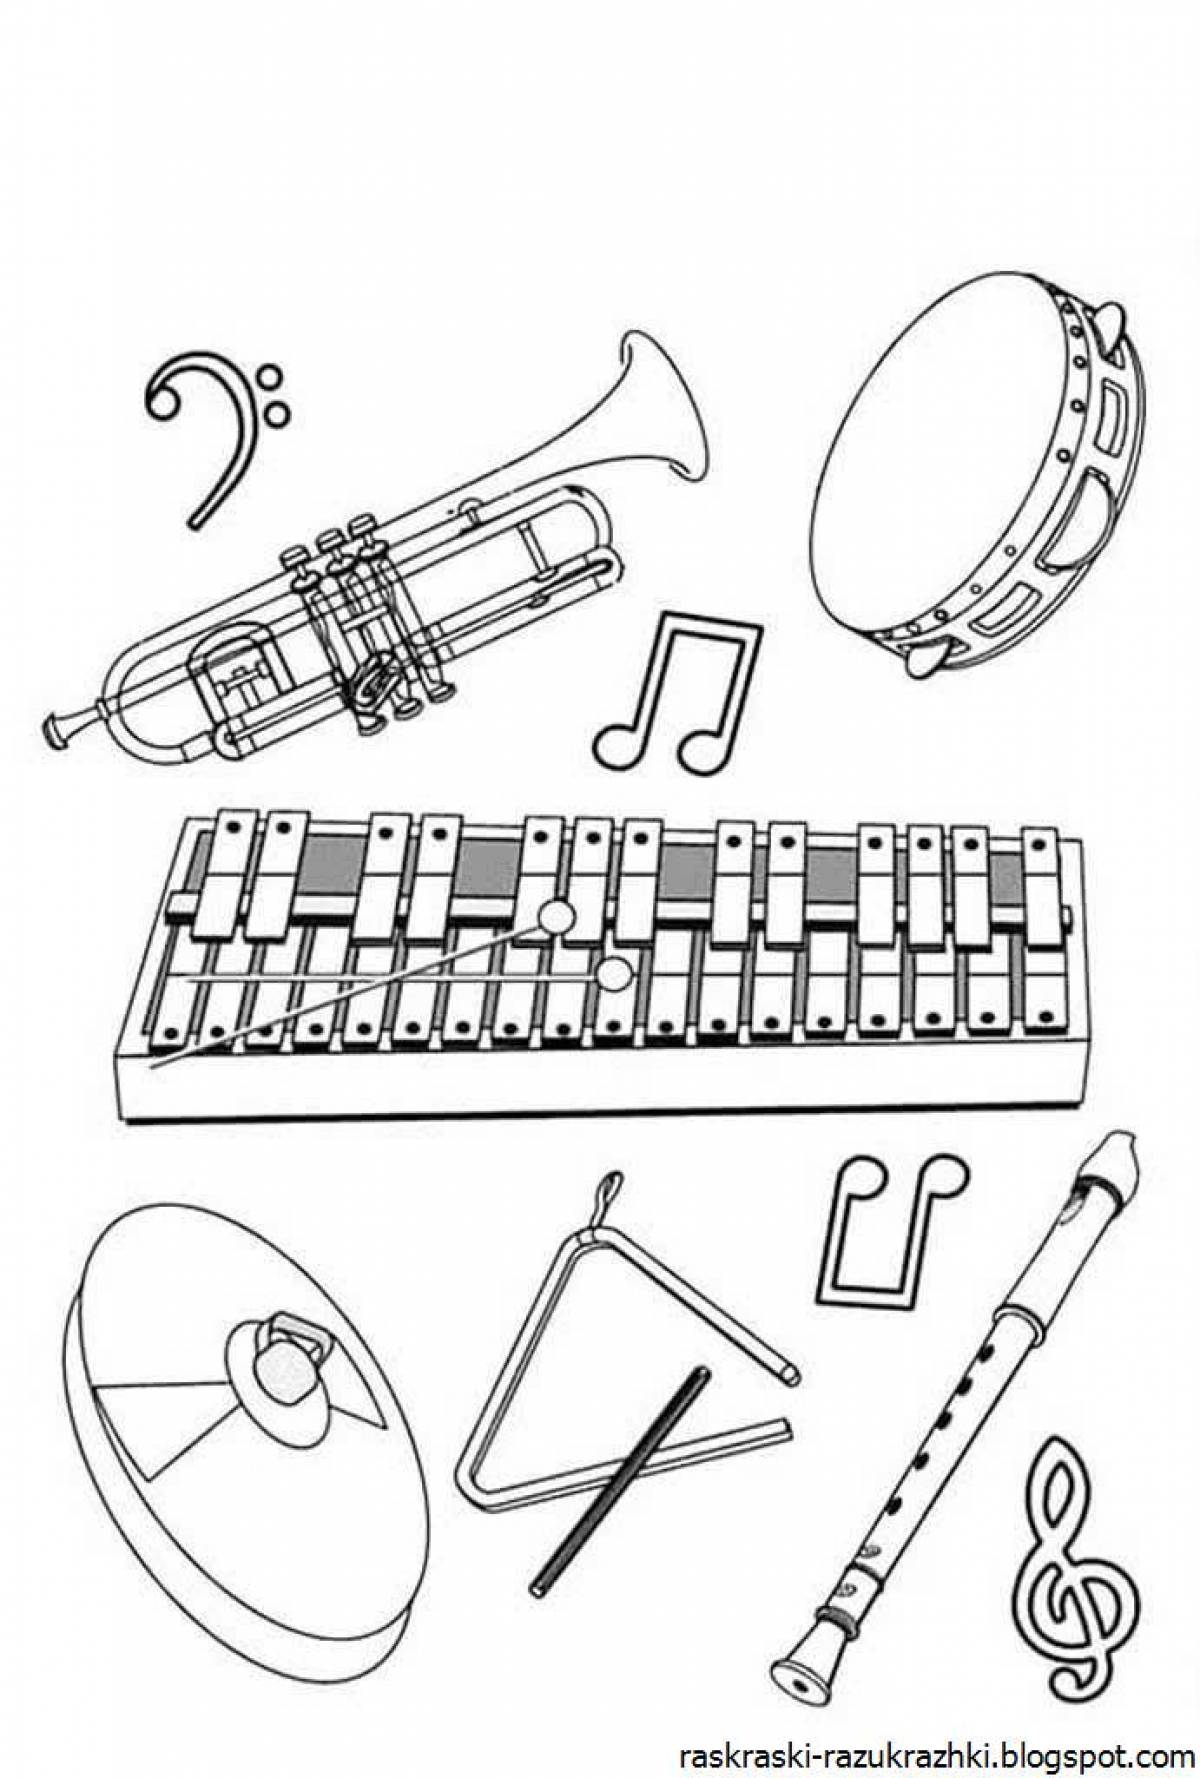 Лучистая раскраска русских народных инструментов